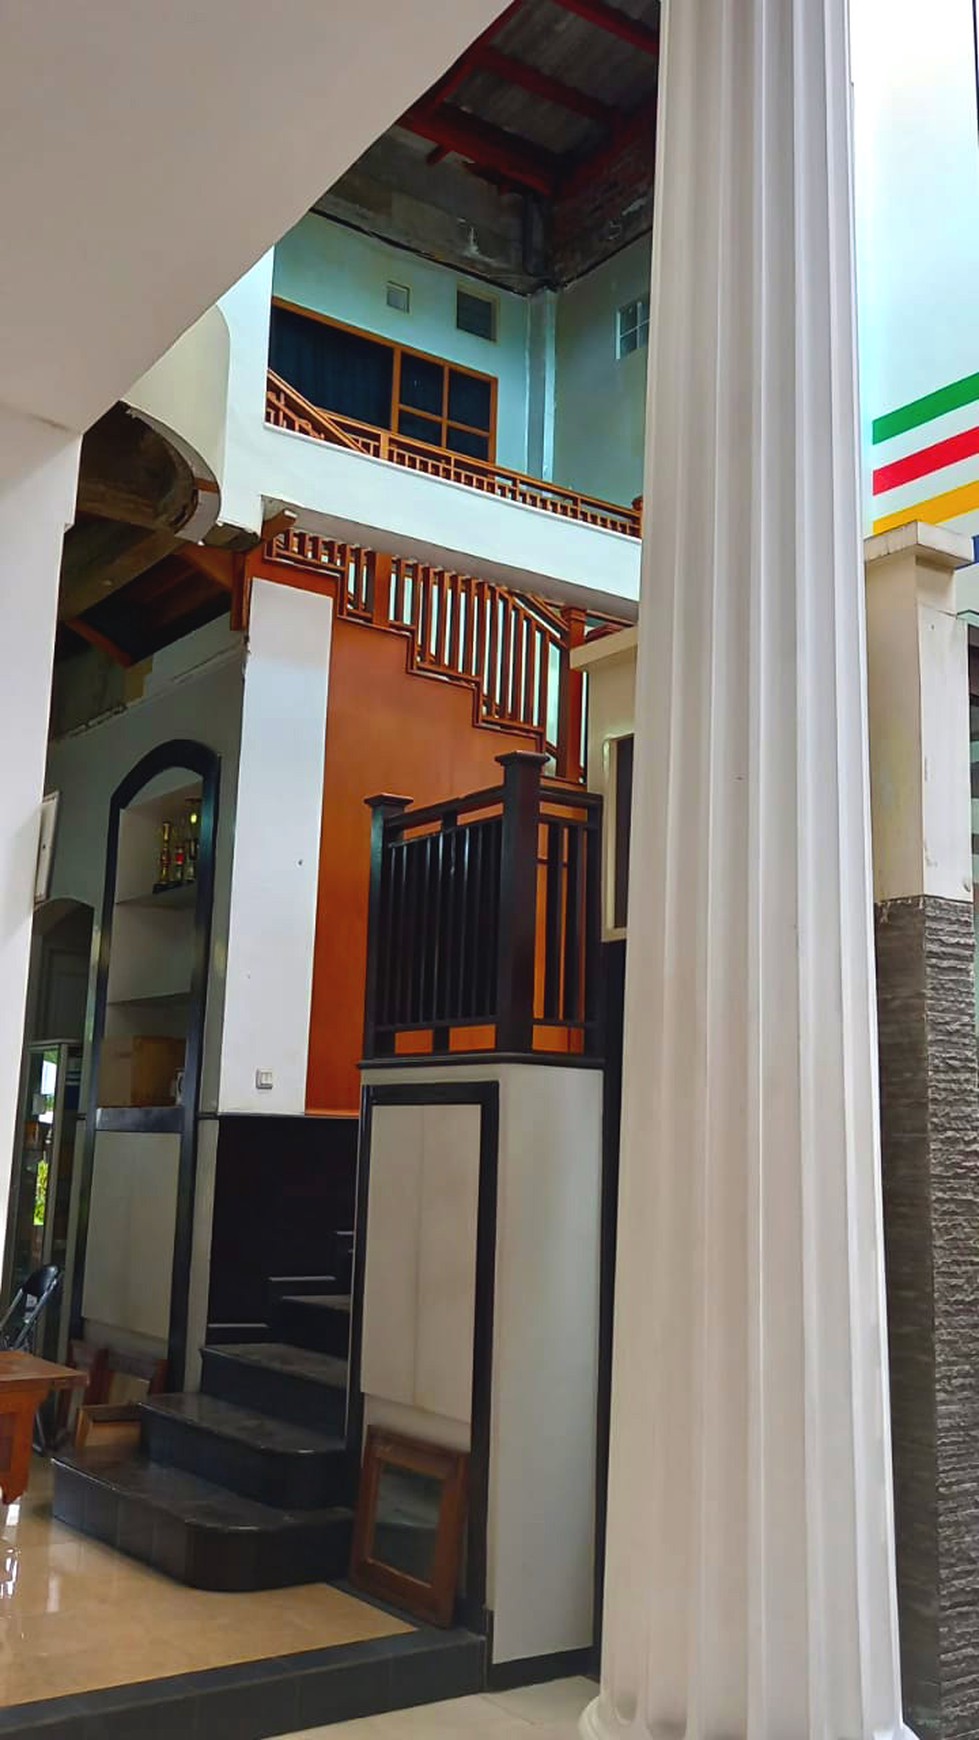 Dijual Rumah Klasik di Daerah Ramai Surabaya Kota